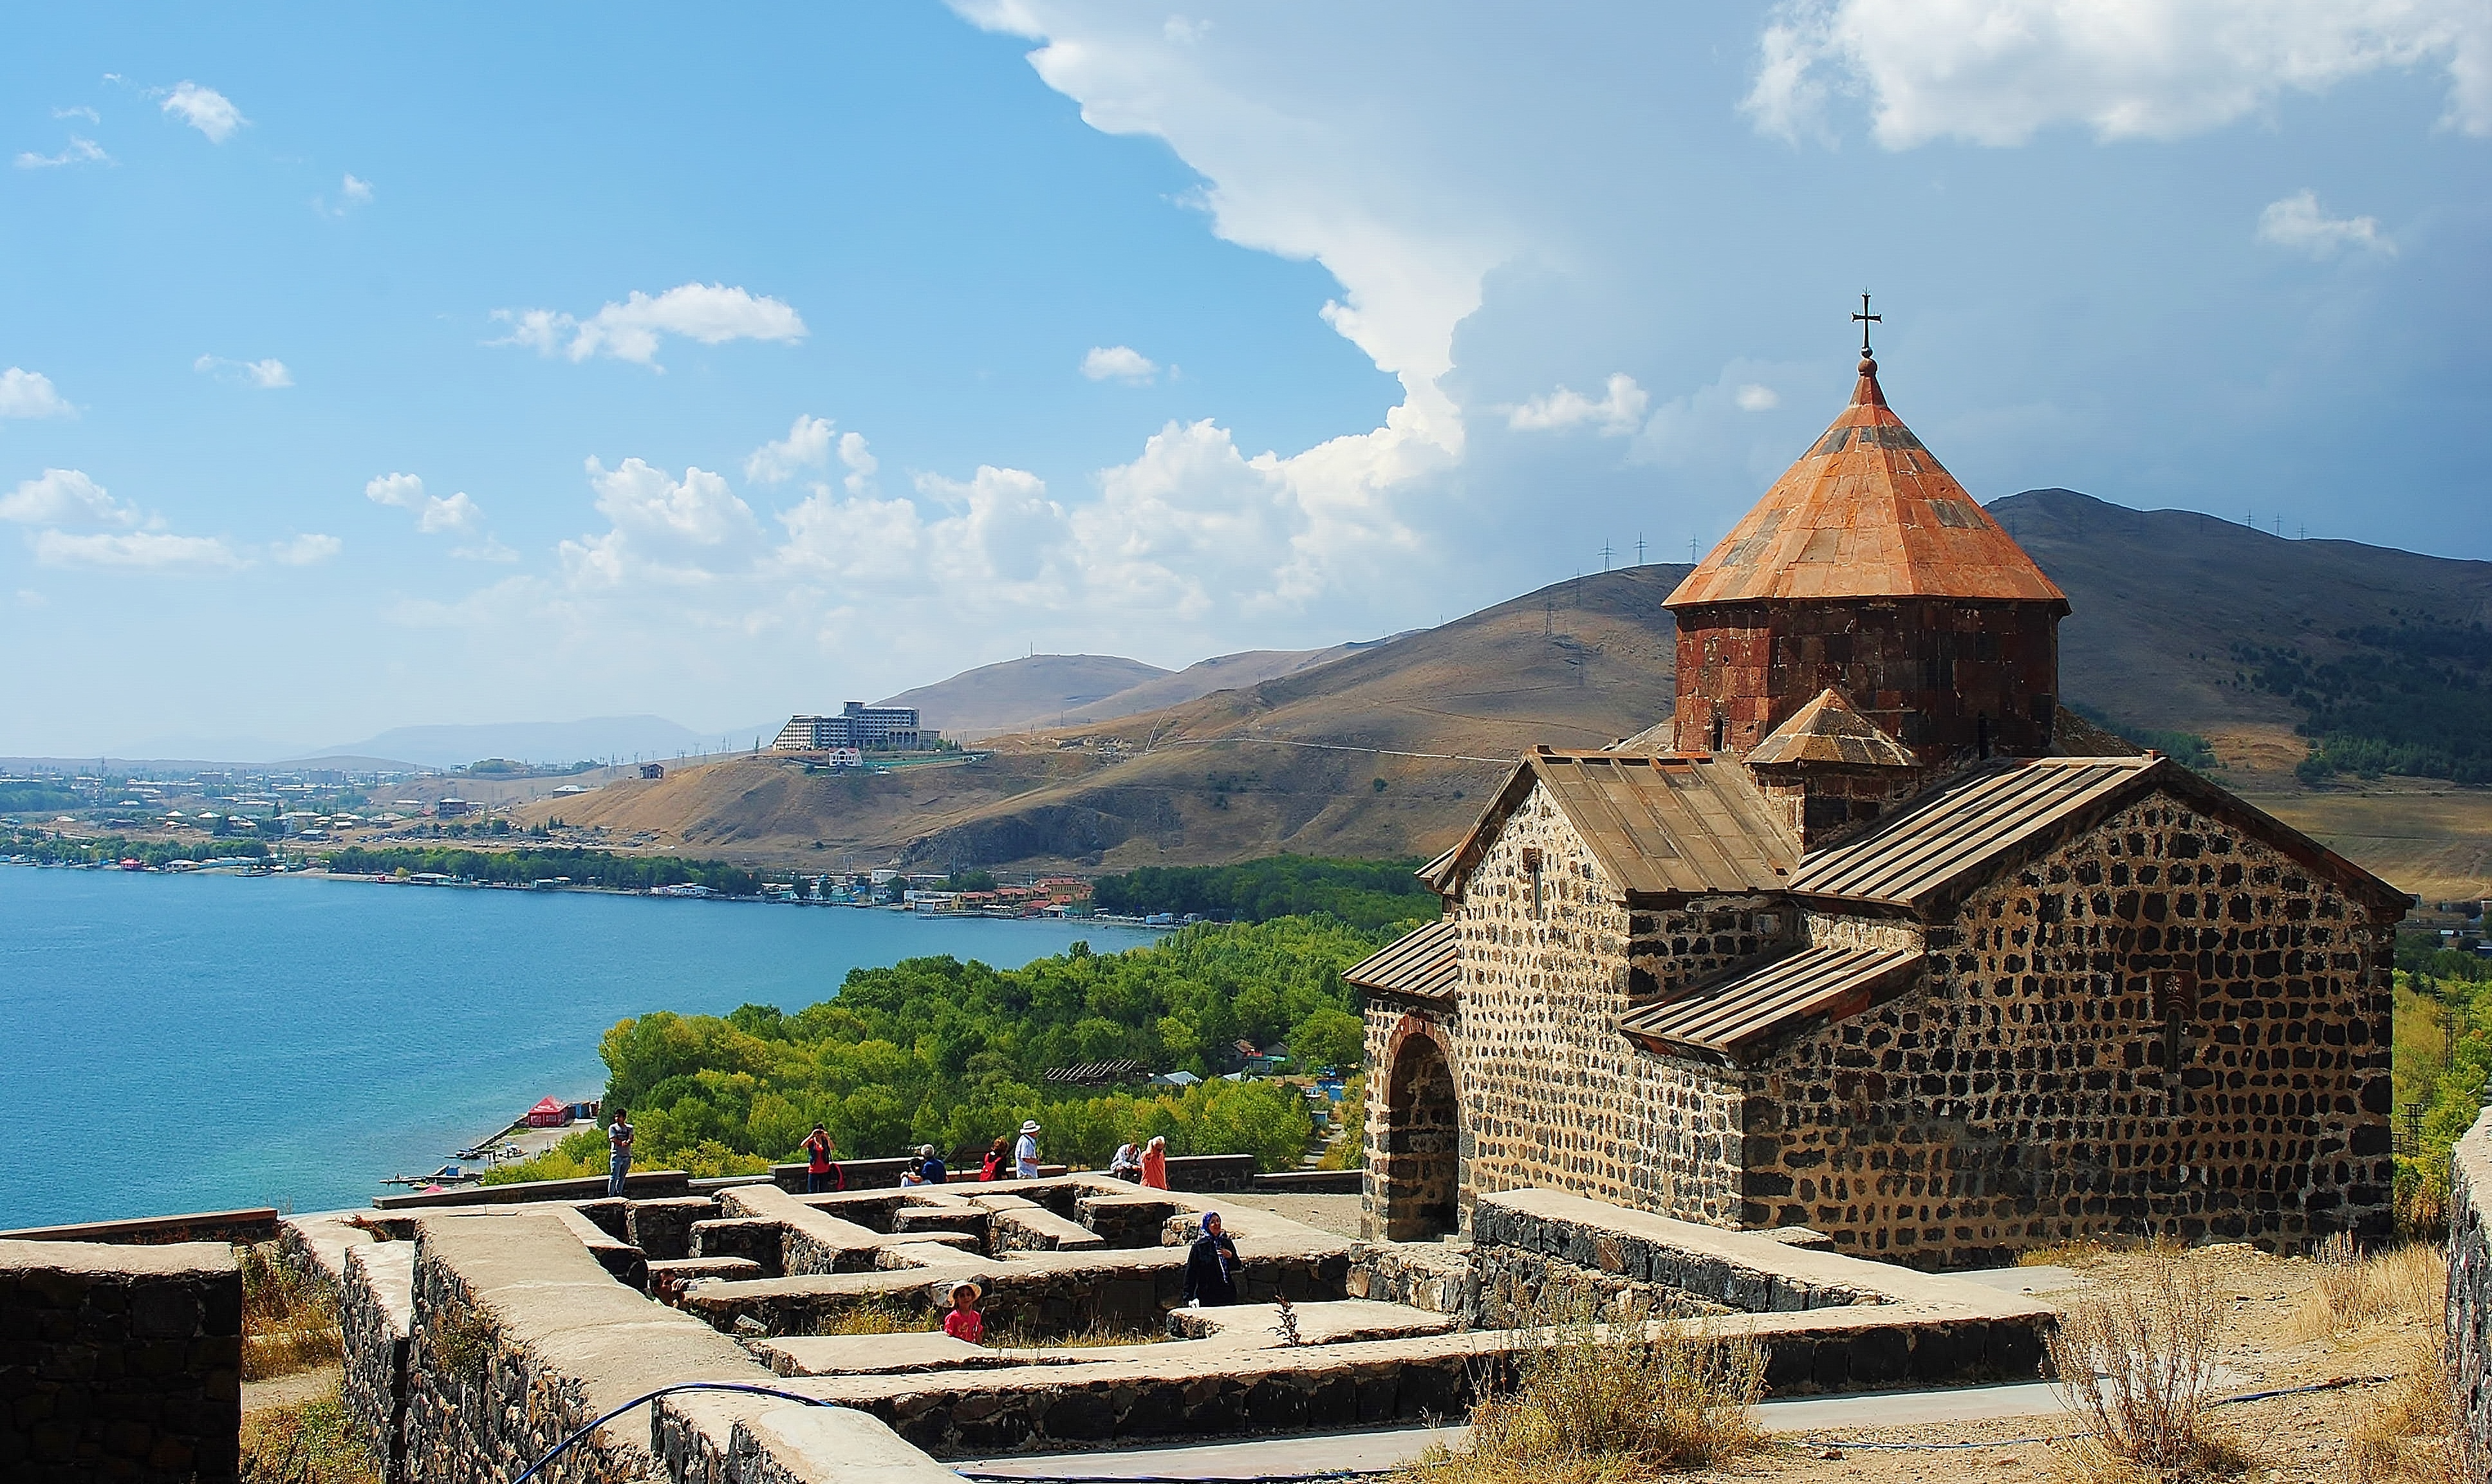 Armenia - Sevanavank monastery and Sevan lake in the background.